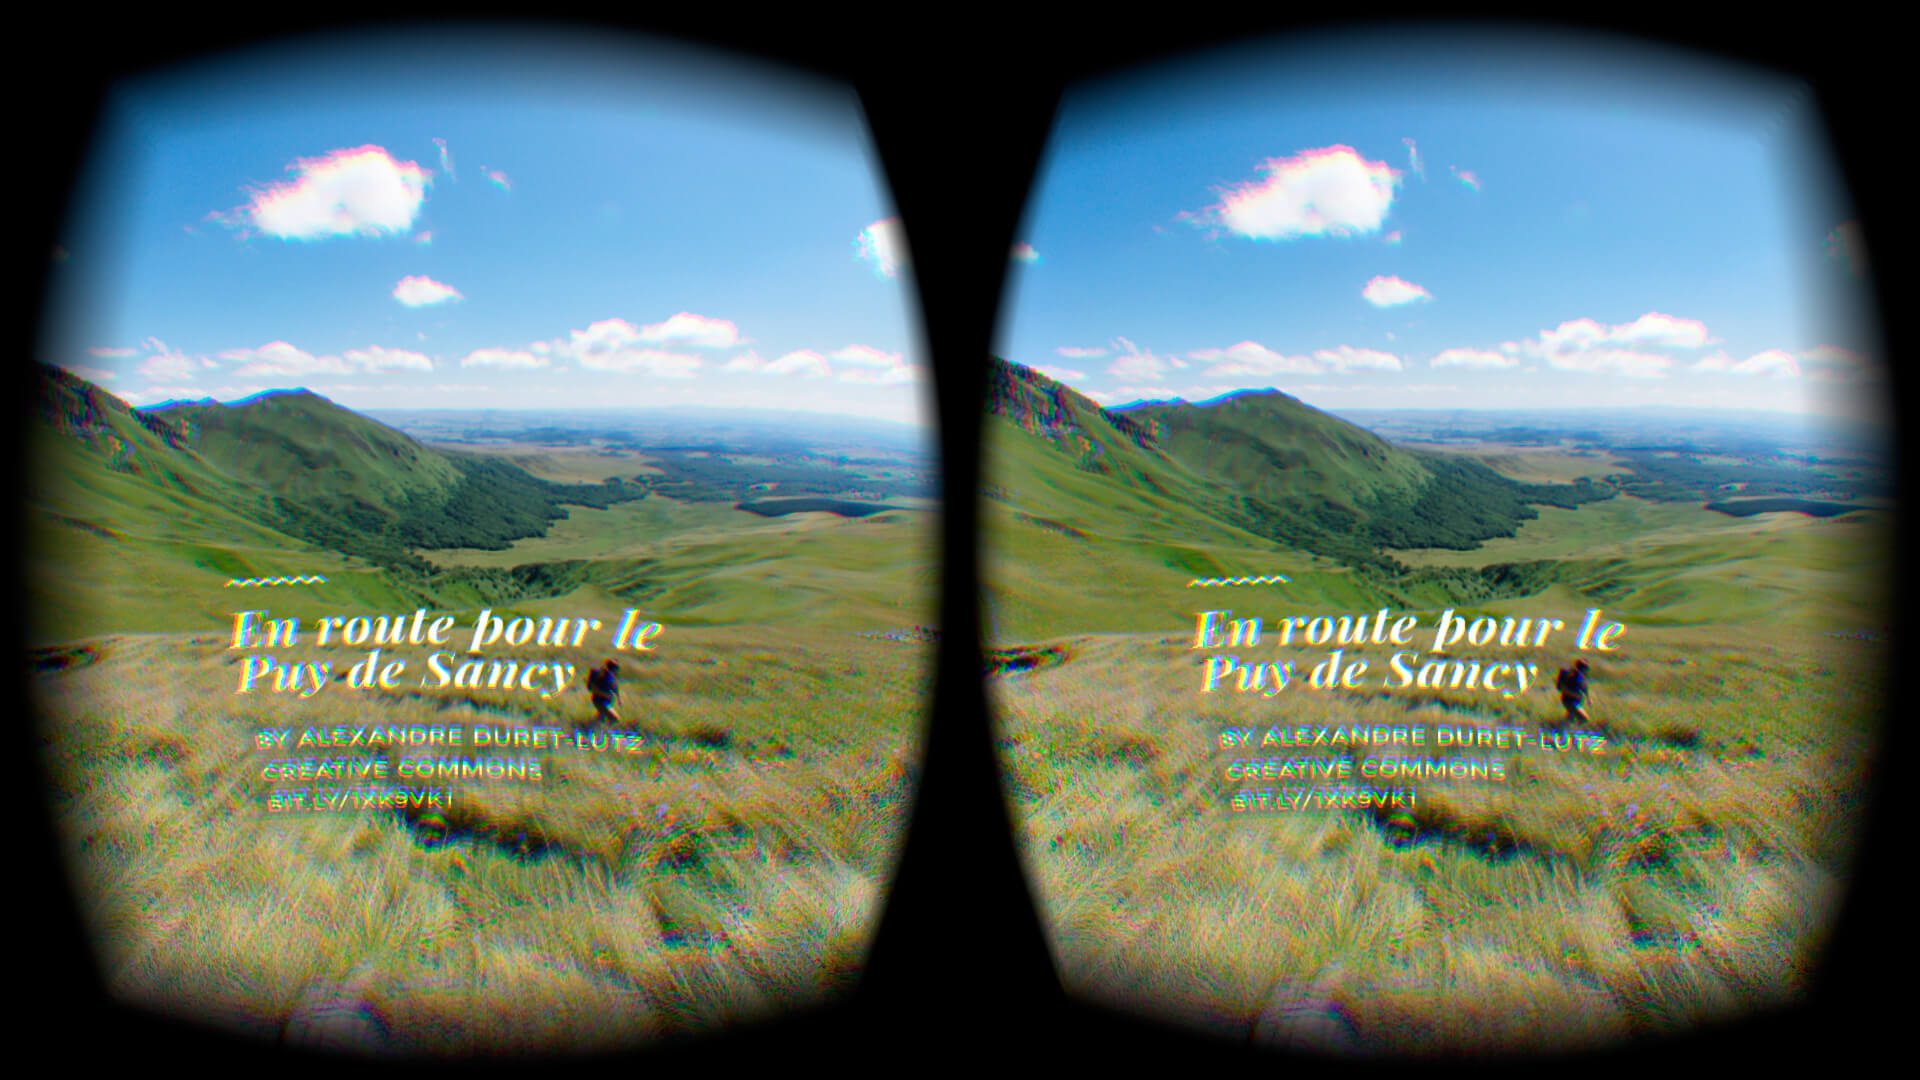 La réalité virtuelle est quoi et comment ça marche ?